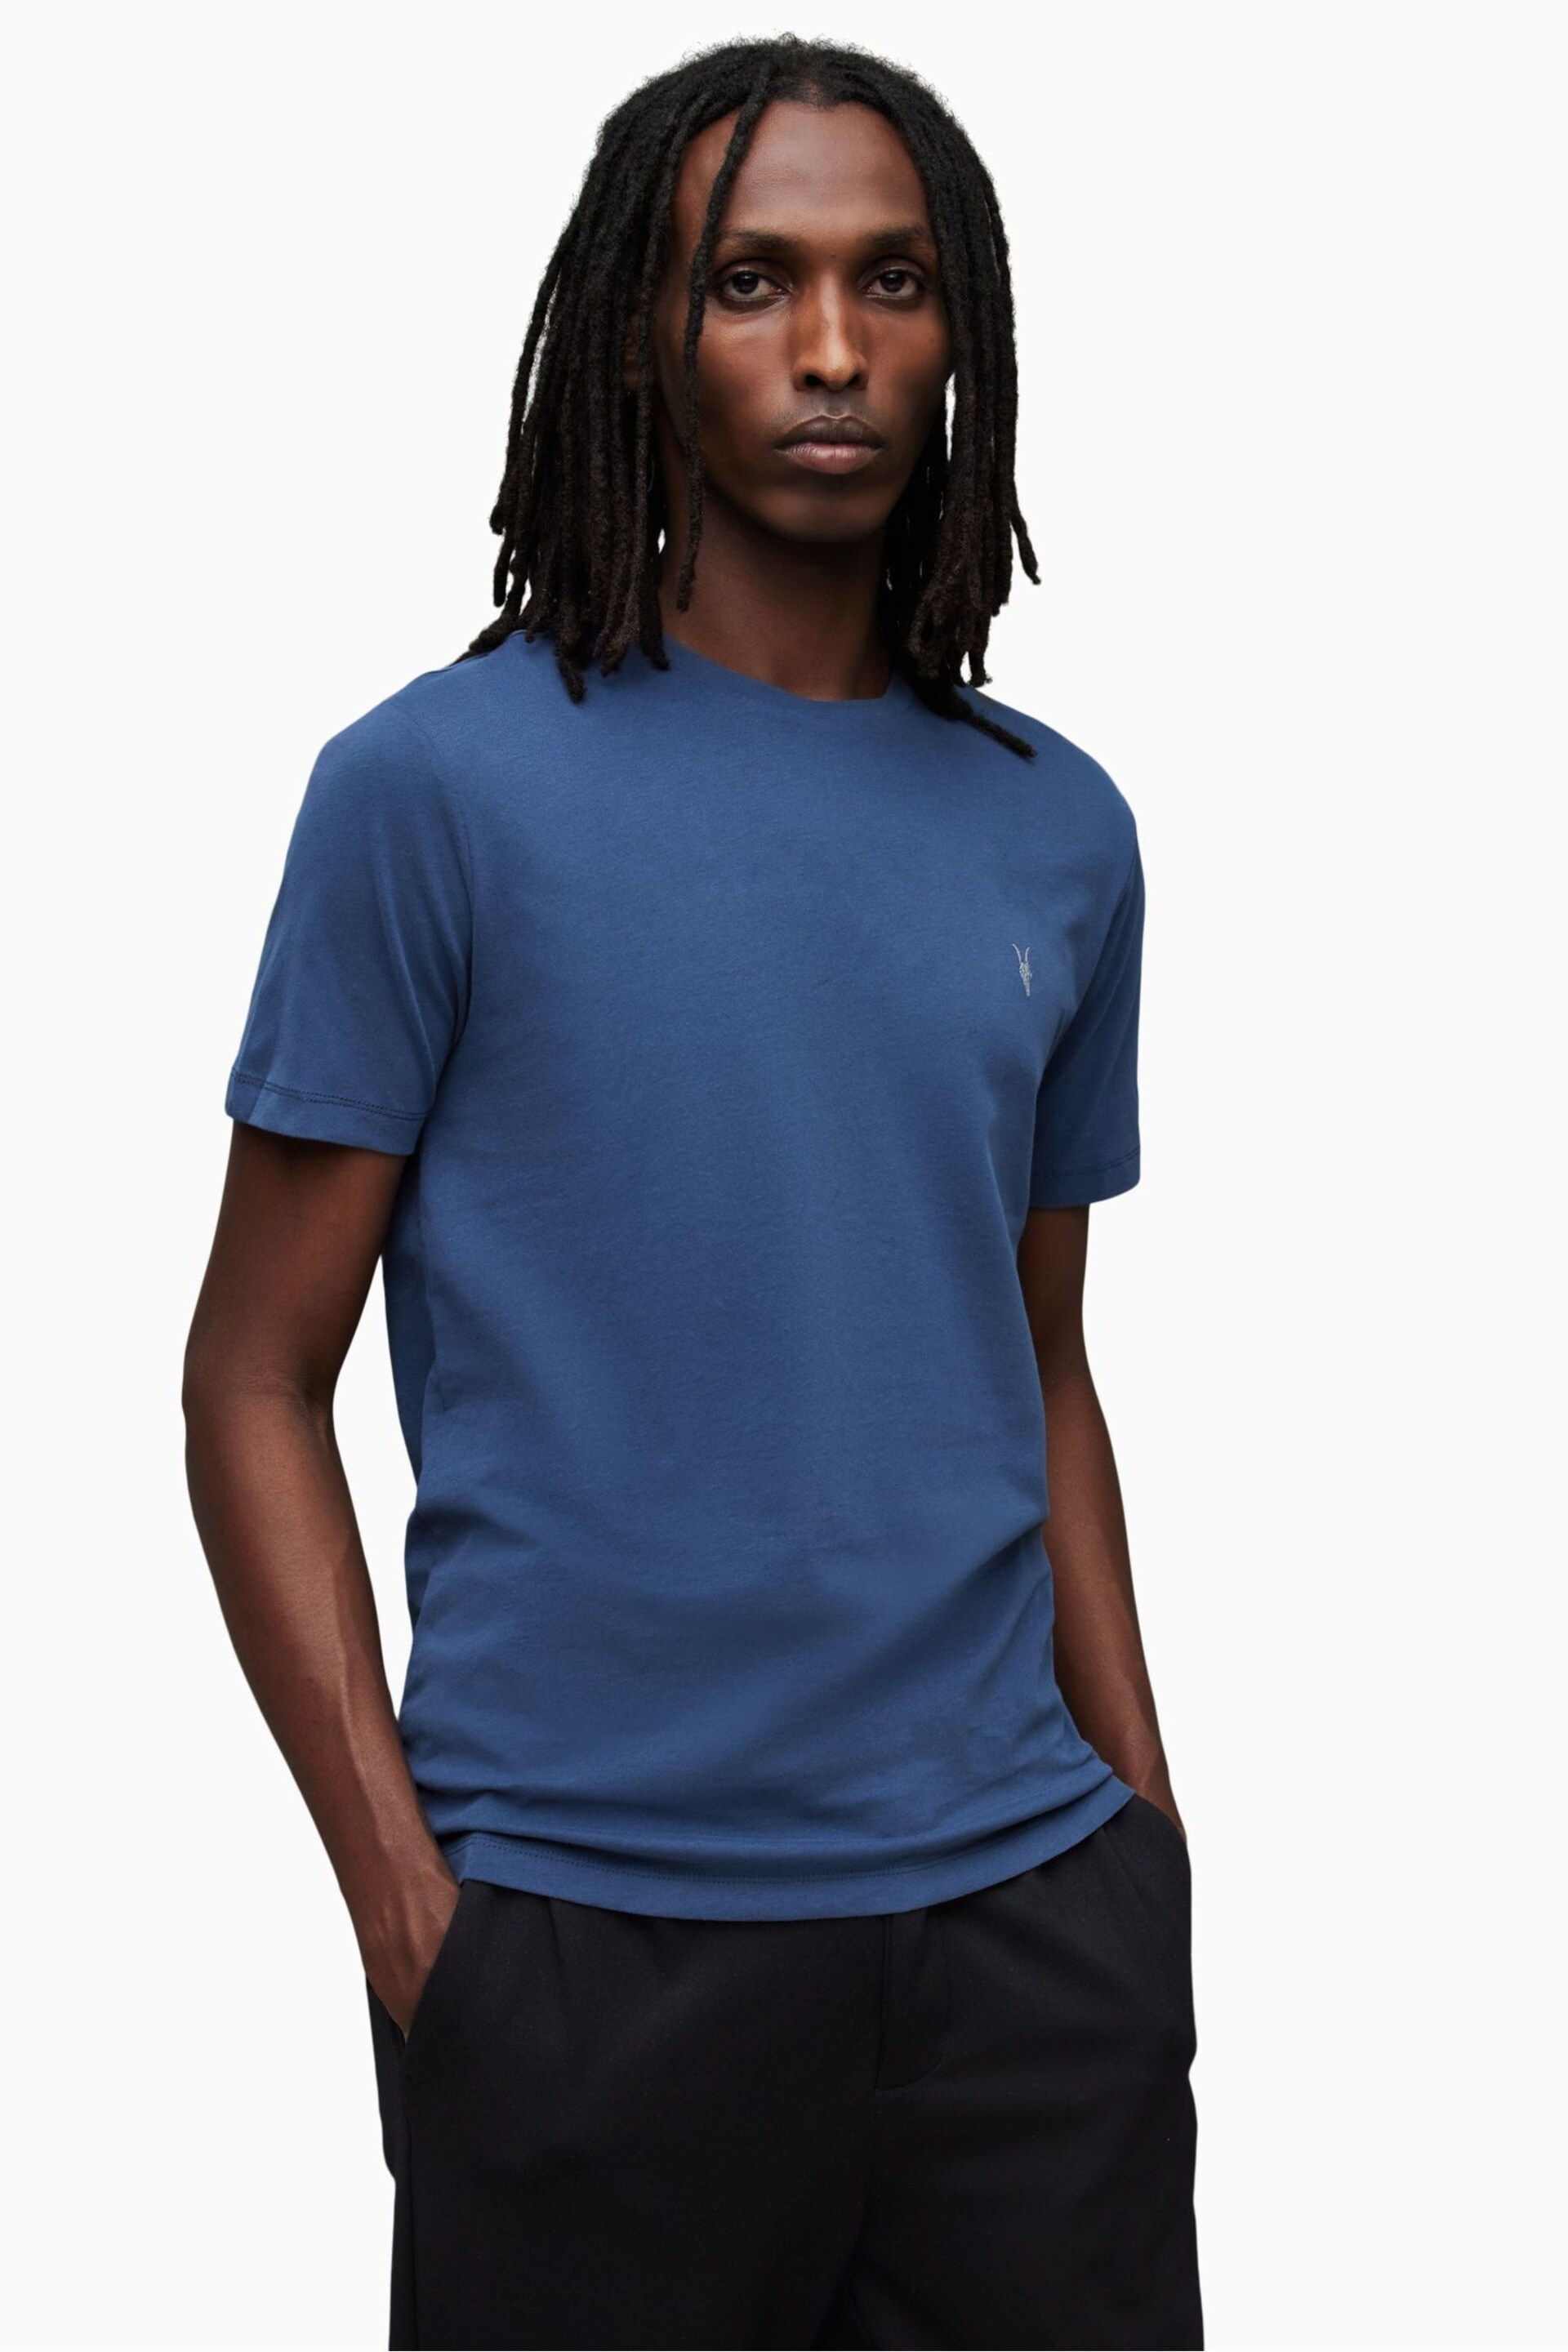 AllSaints Blue Brace T-Shirts 3 Pack - Image 4 of 7